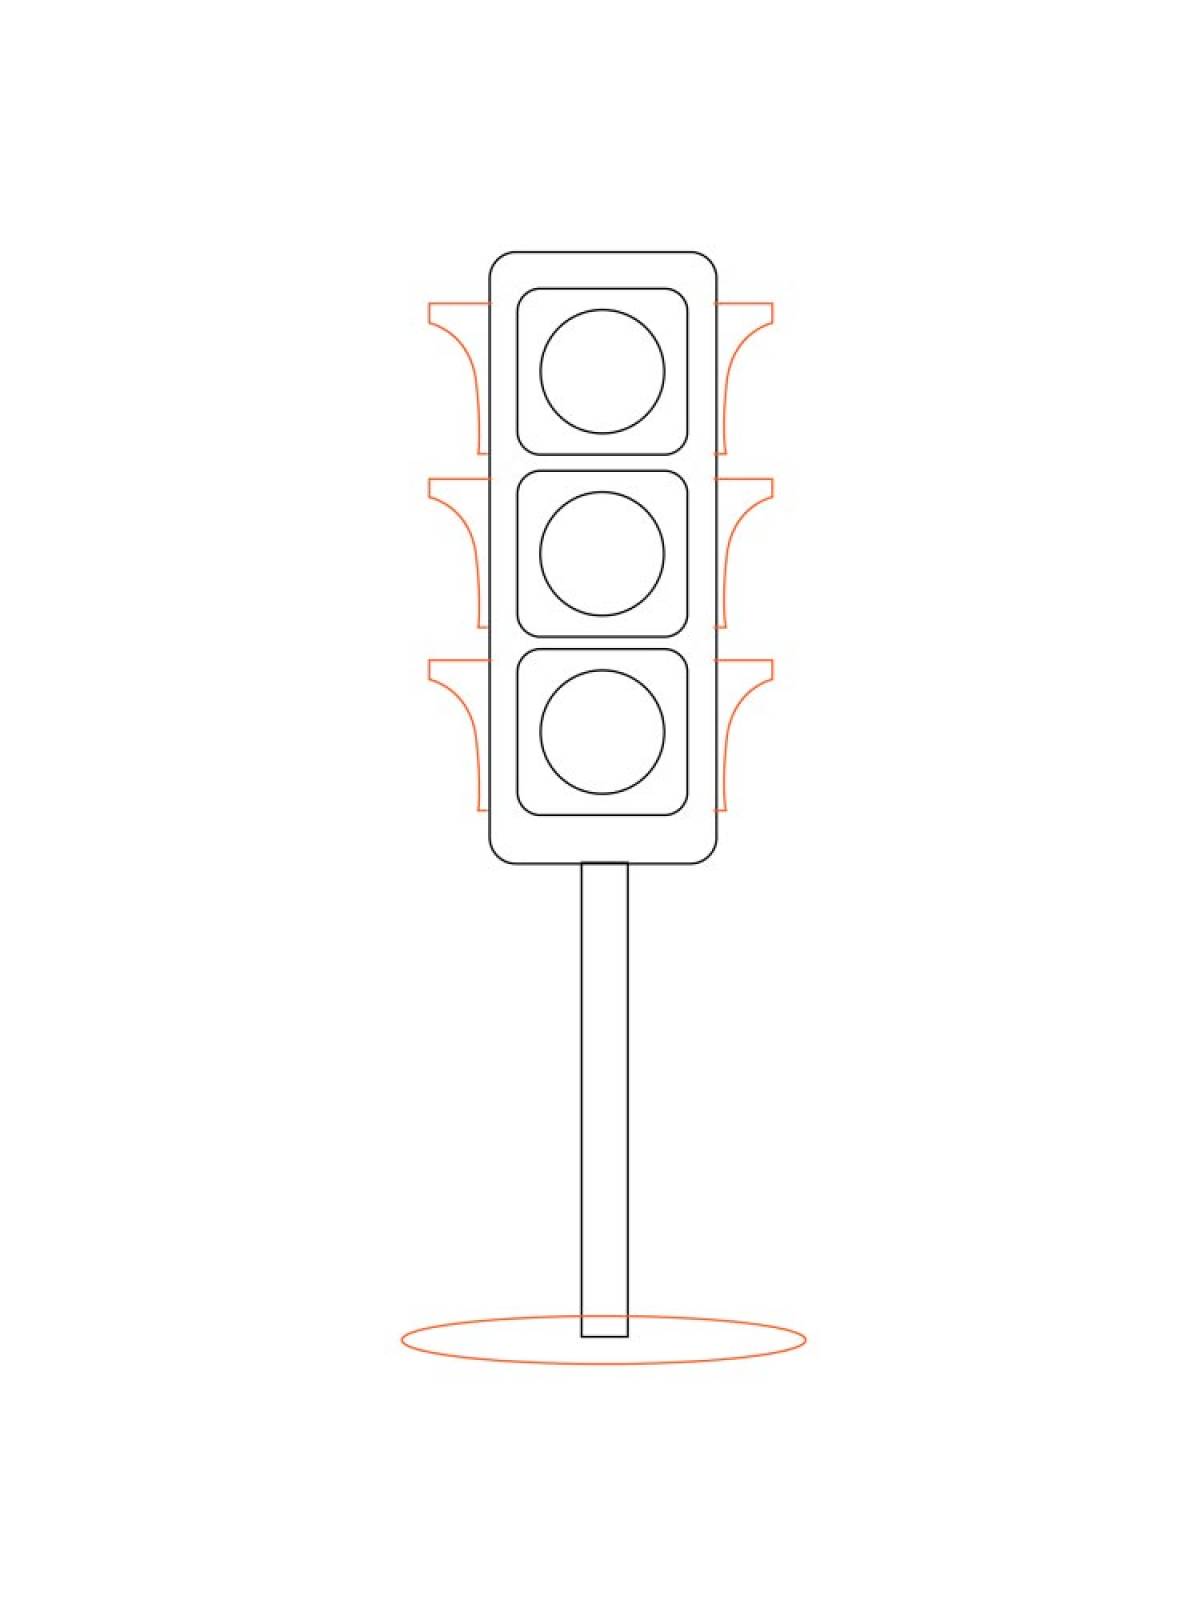 Эскиз светофора